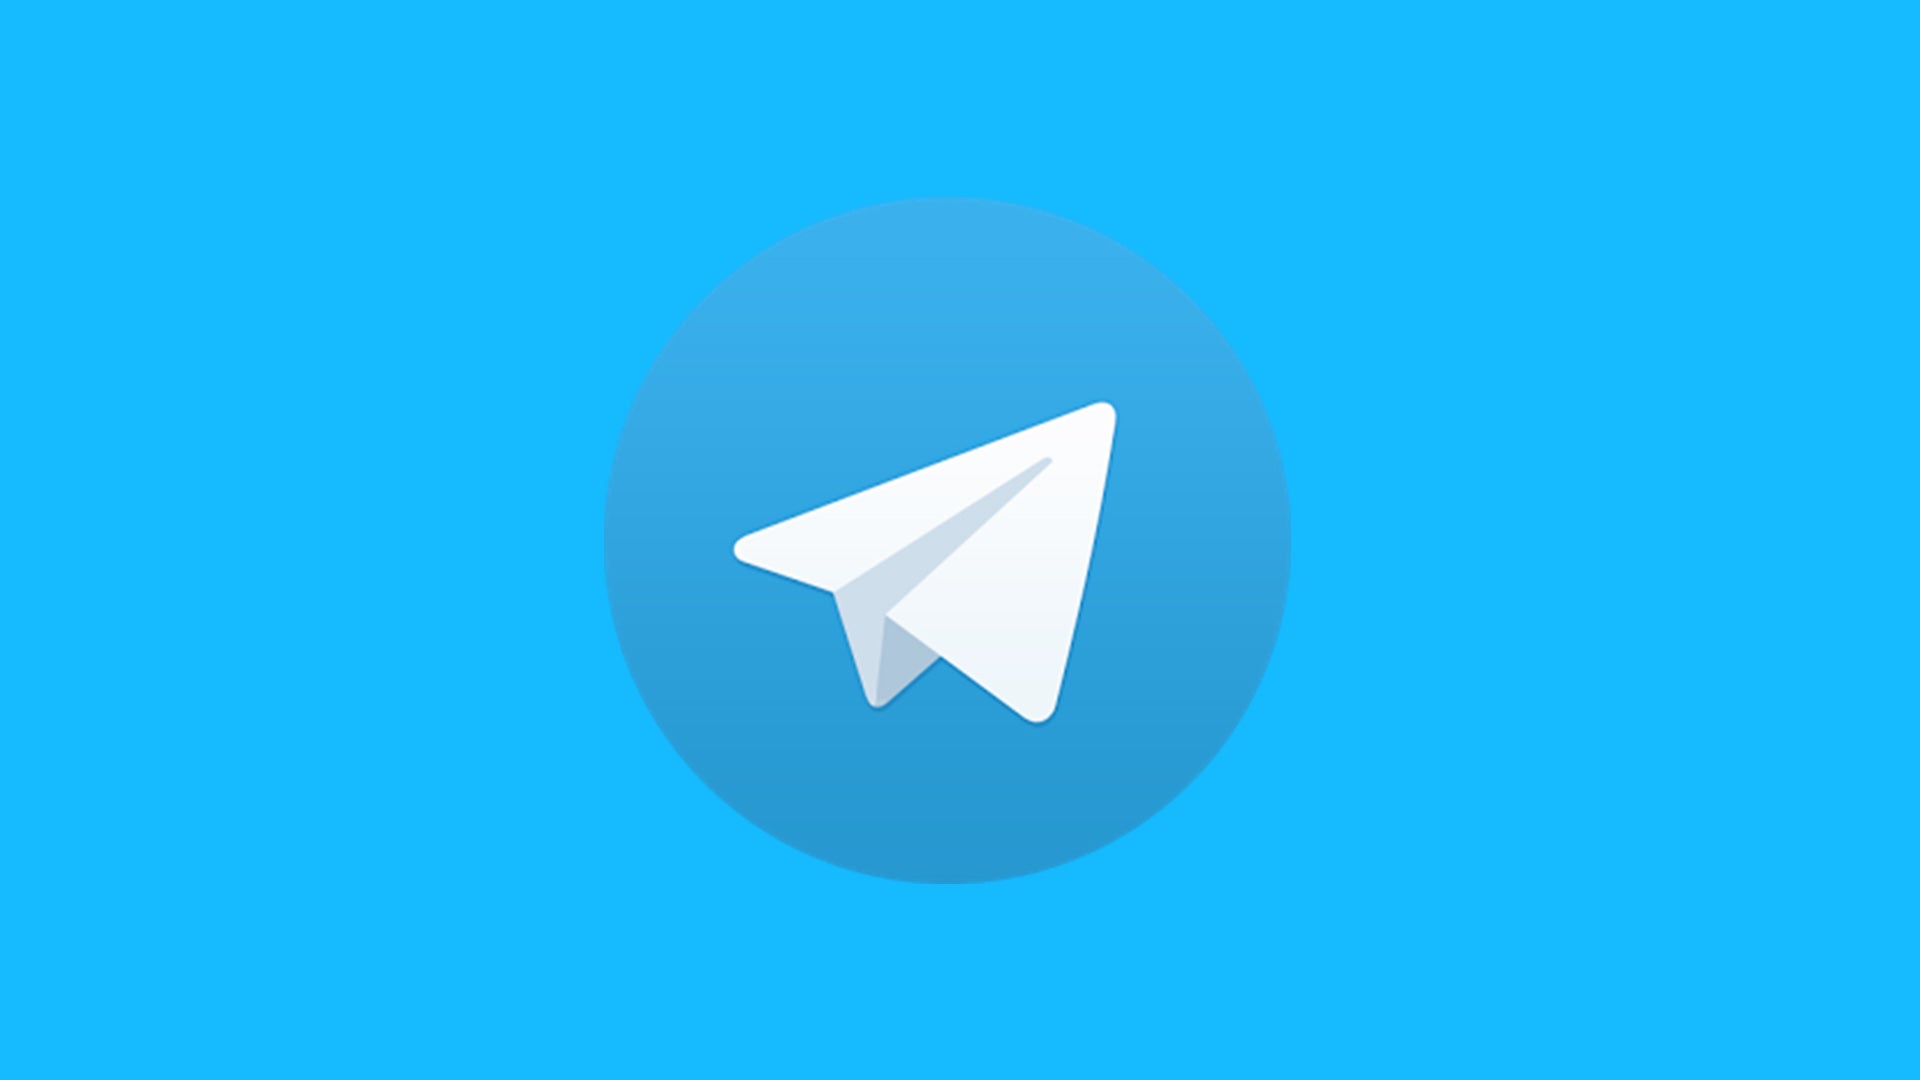 Telegram账号出售 | 在这里购买或出售高质量账号